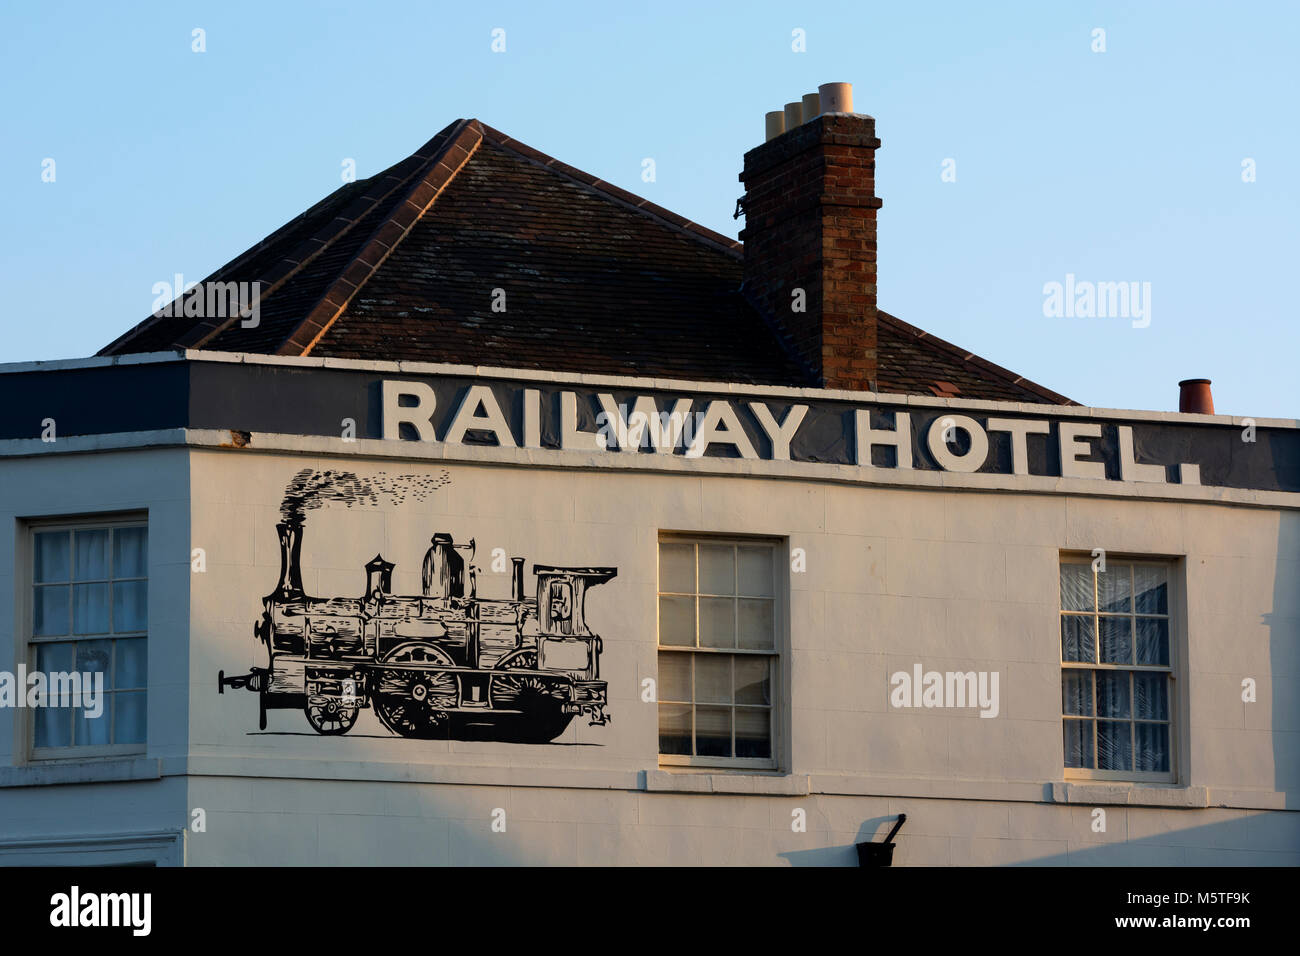 The Railway Hotel, Evesham, Worcestershire, England, UK Stock Photo